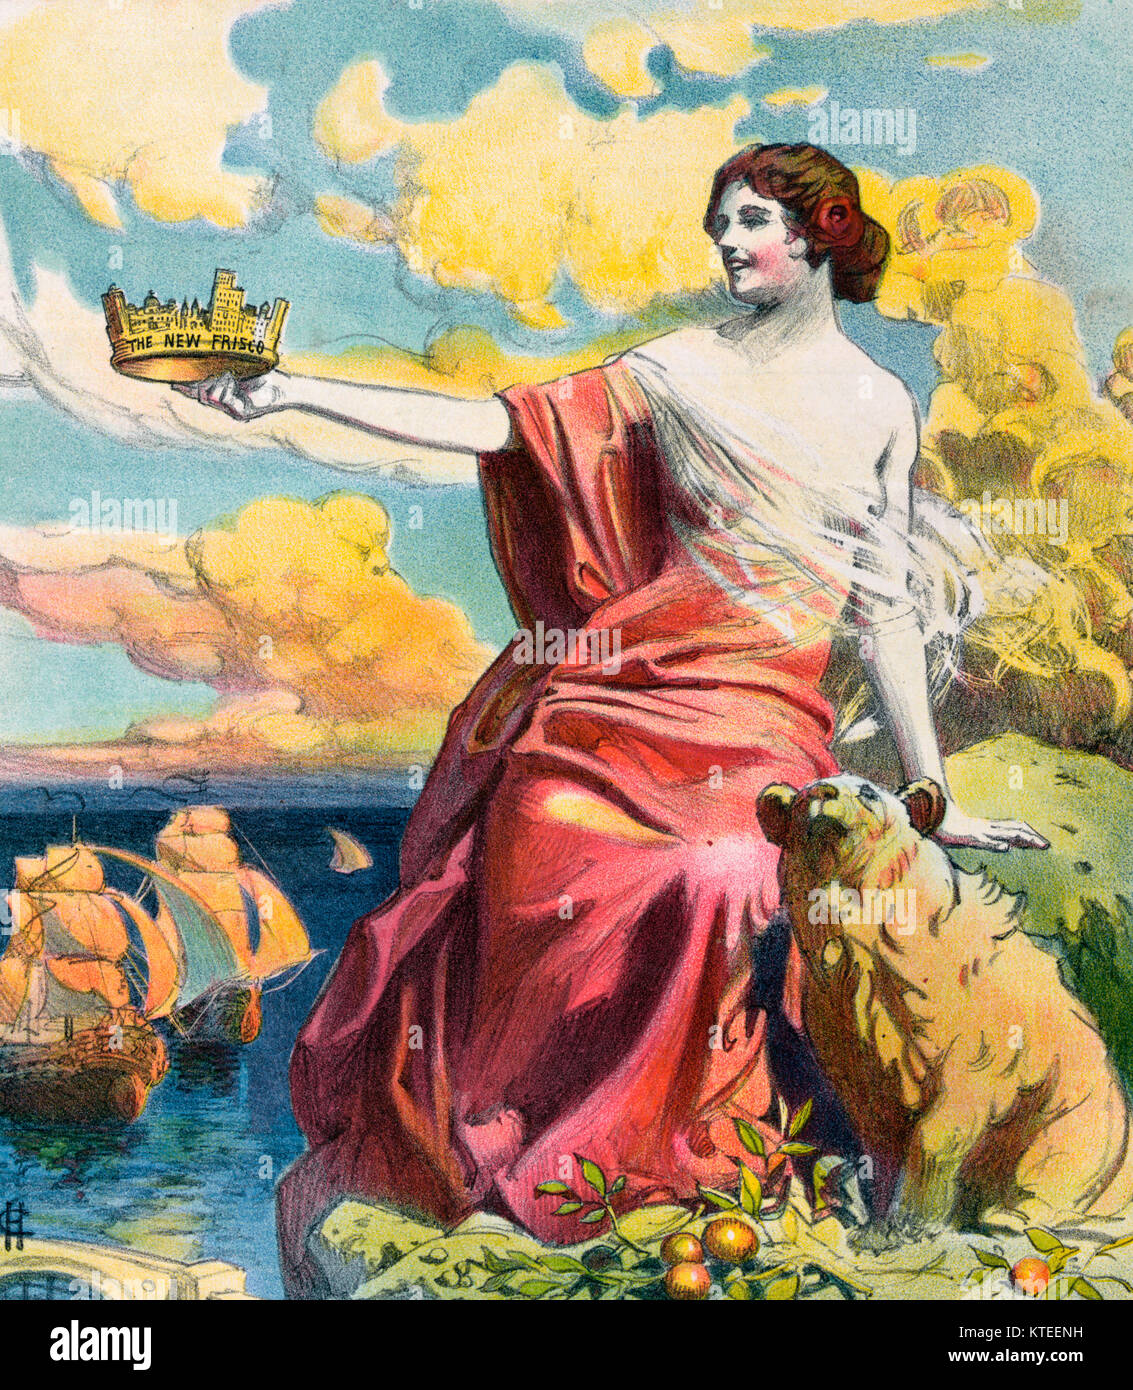 L'illustration montre une figure féminine tenant une couronne marqués 'La nouvelle Frisco', d'après une ville. un ours est assis sur le sol à côté d'elle et, en arrière-plan, sont 16e ou 17e siècle, la marine à voile. Caricature politique 1906 Banque D'Images